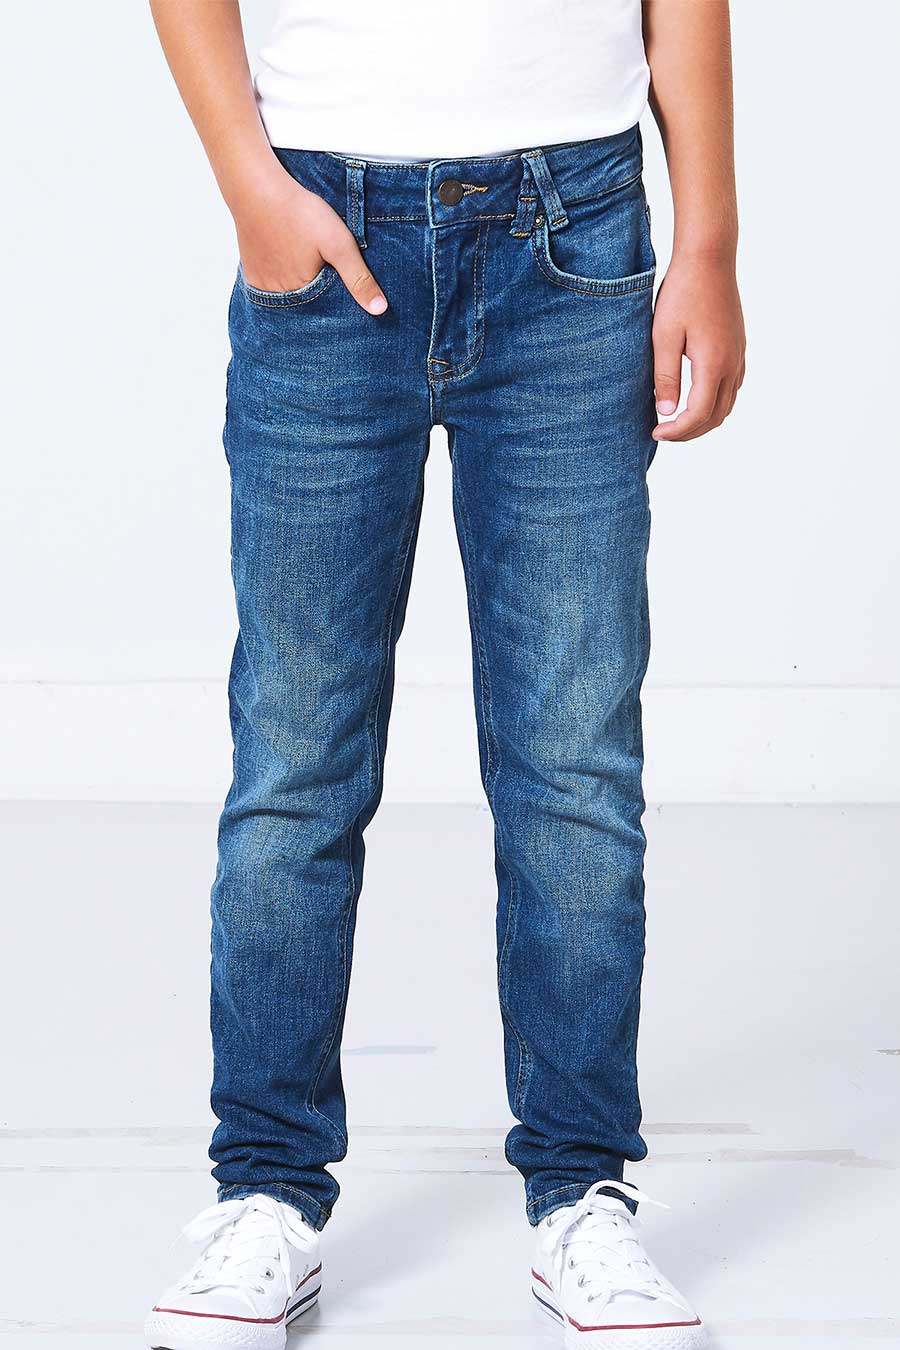 kyle Jr Jeans